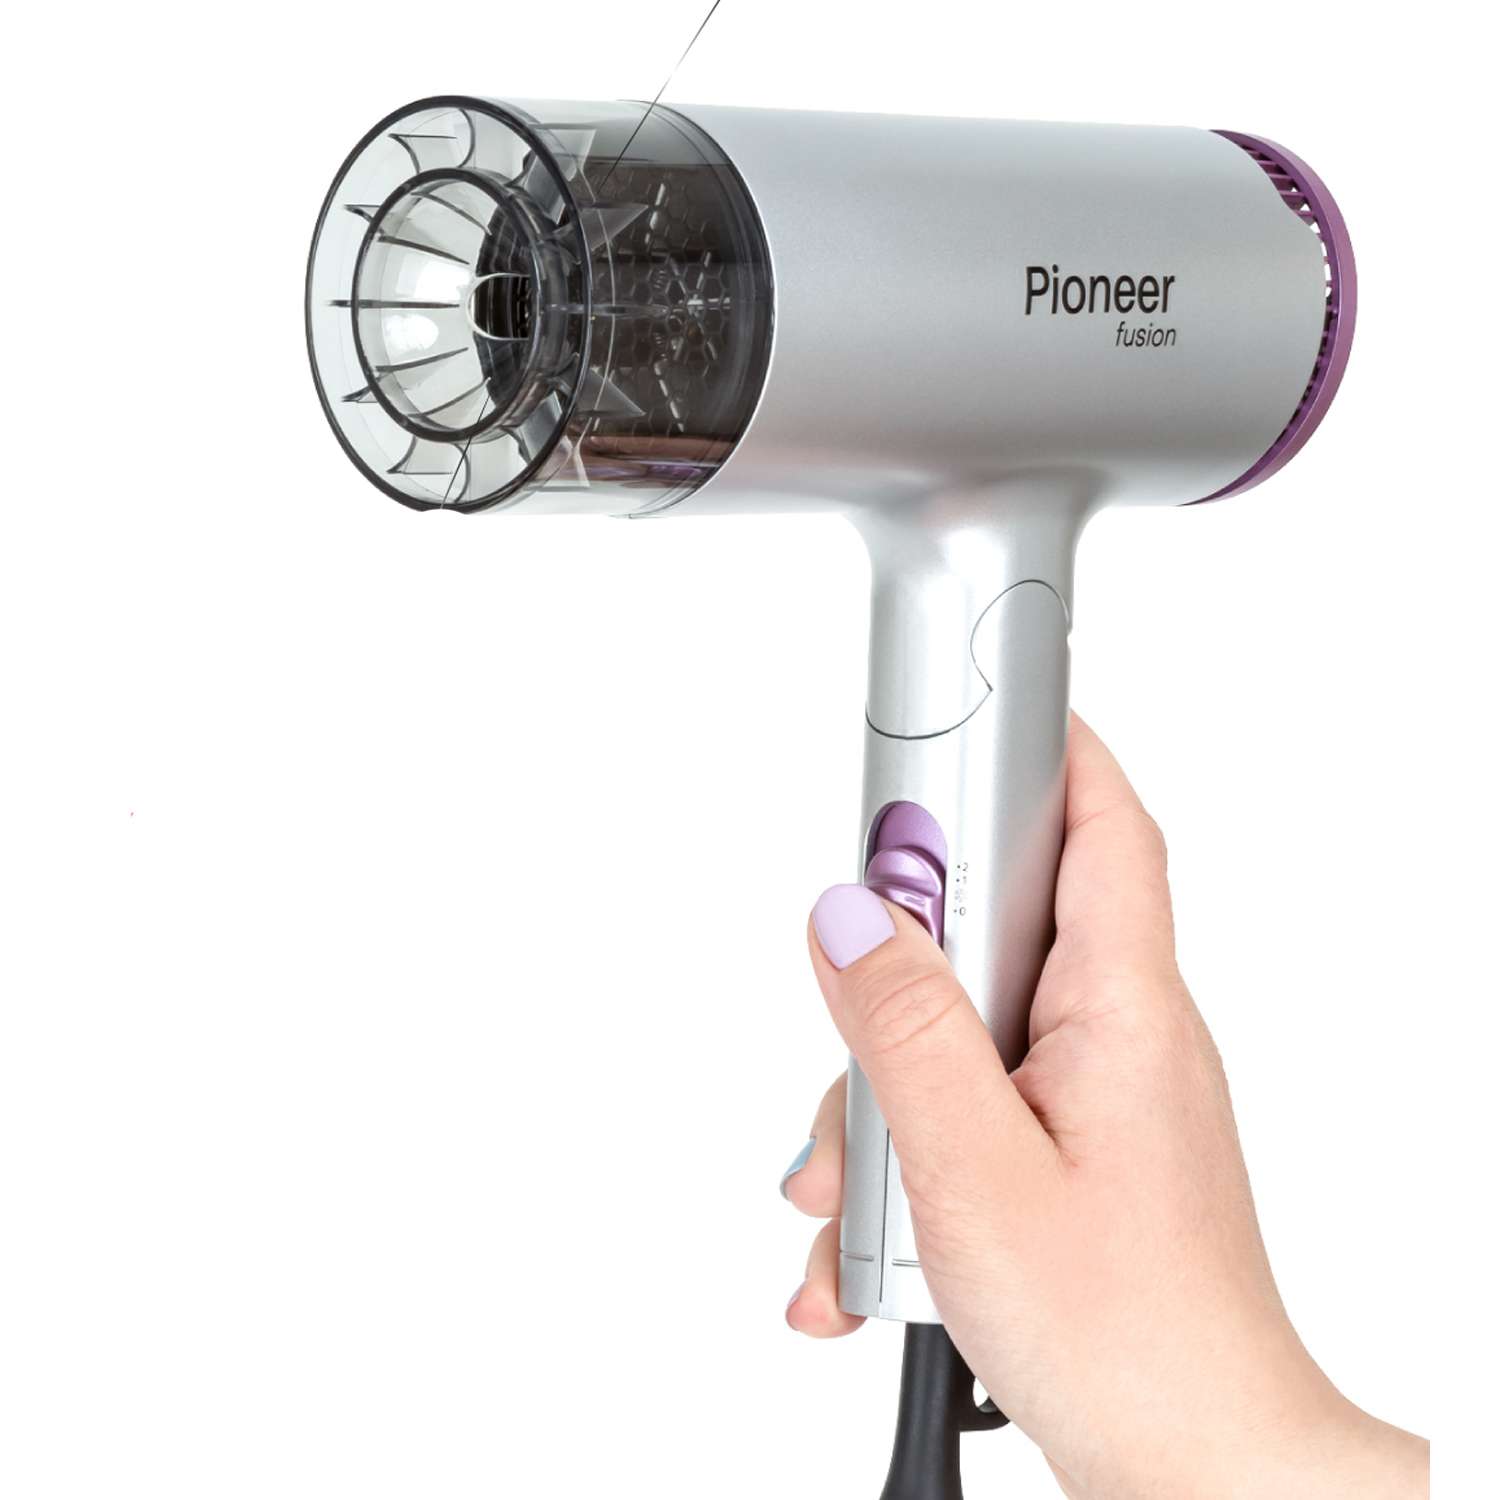 Фен для волос Pioneer с ионизацией серебристый/фиолетовый - фото 2